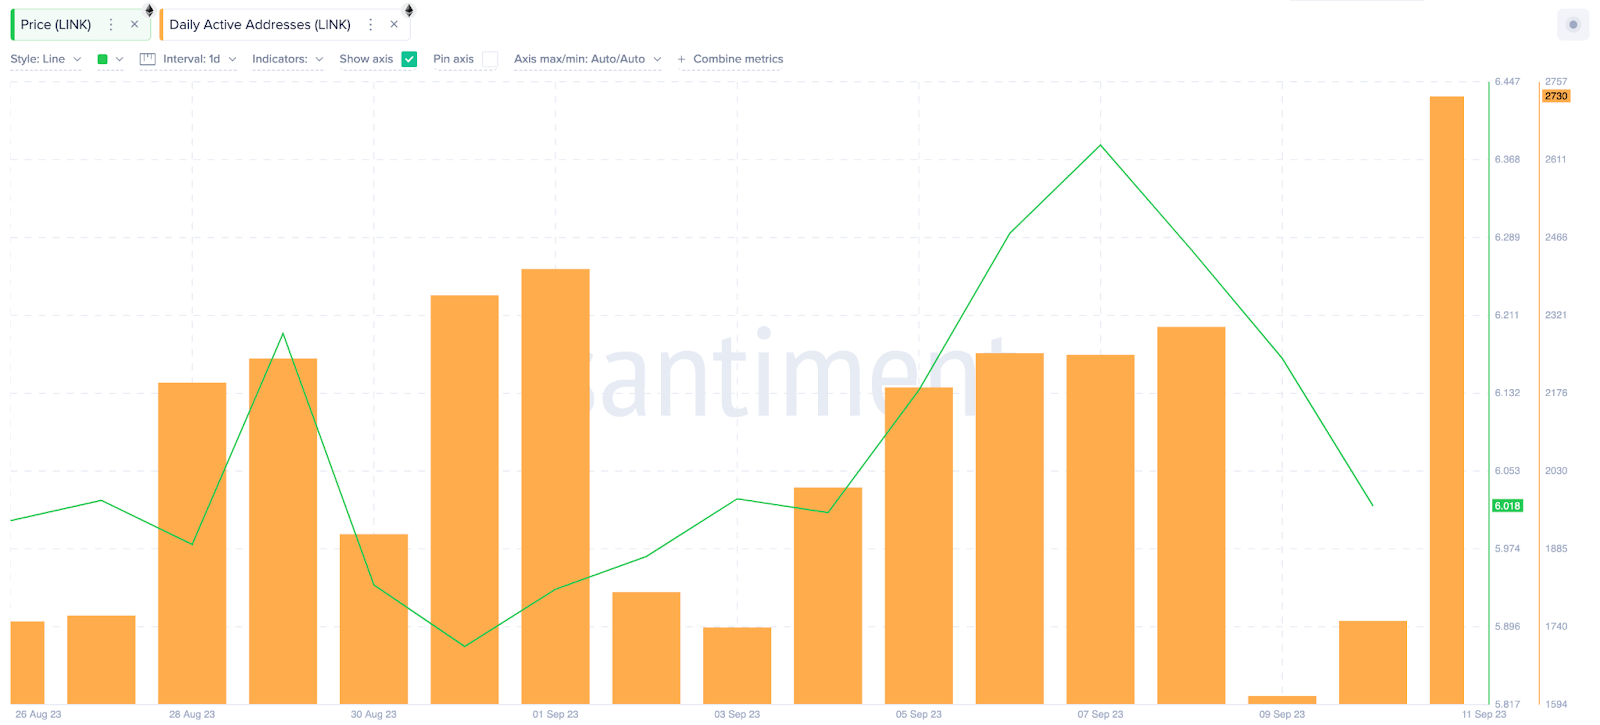 Il corso di modifica del prezzo di Chainlink (LINK) man mano che i nuovi utenti arrivano in | Indirizzi attivi, settembre 2023.